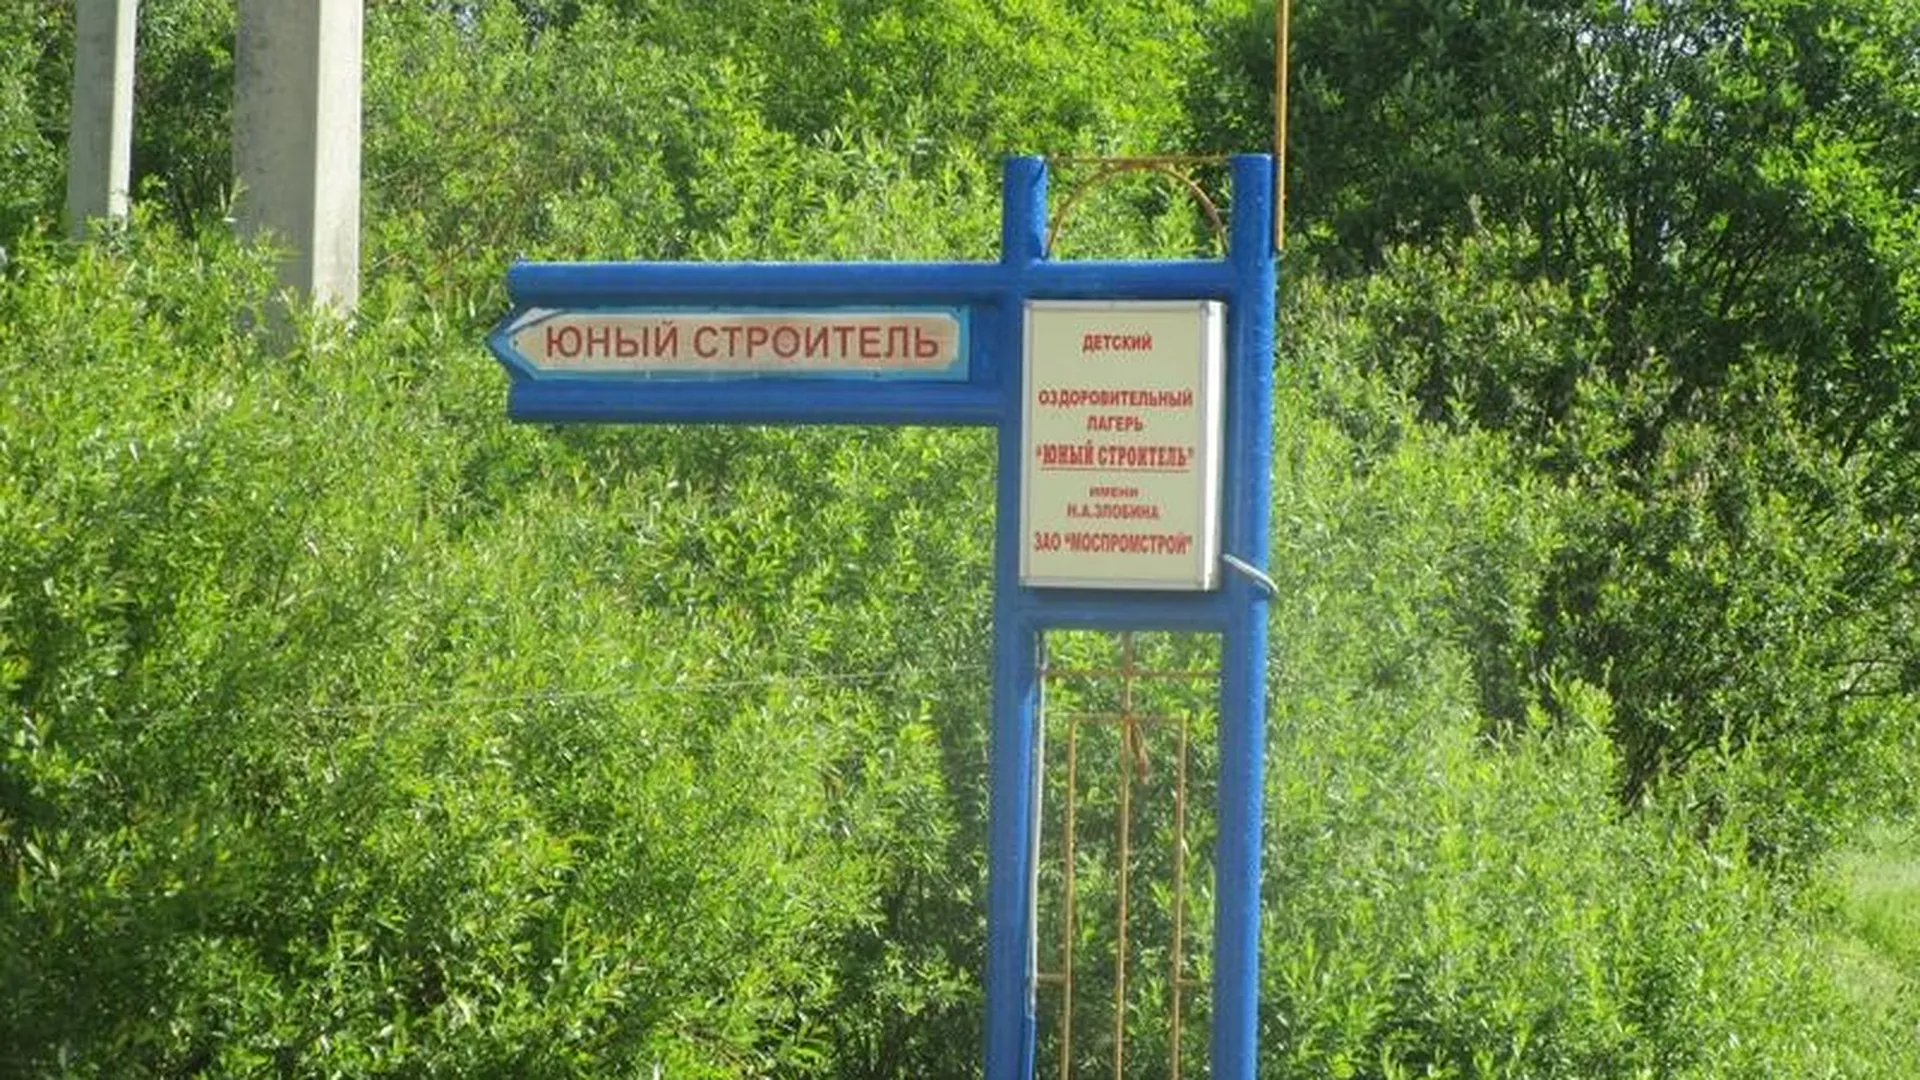 Четыре детских лагеря в Истринском районе вызвали замечания ГАТН